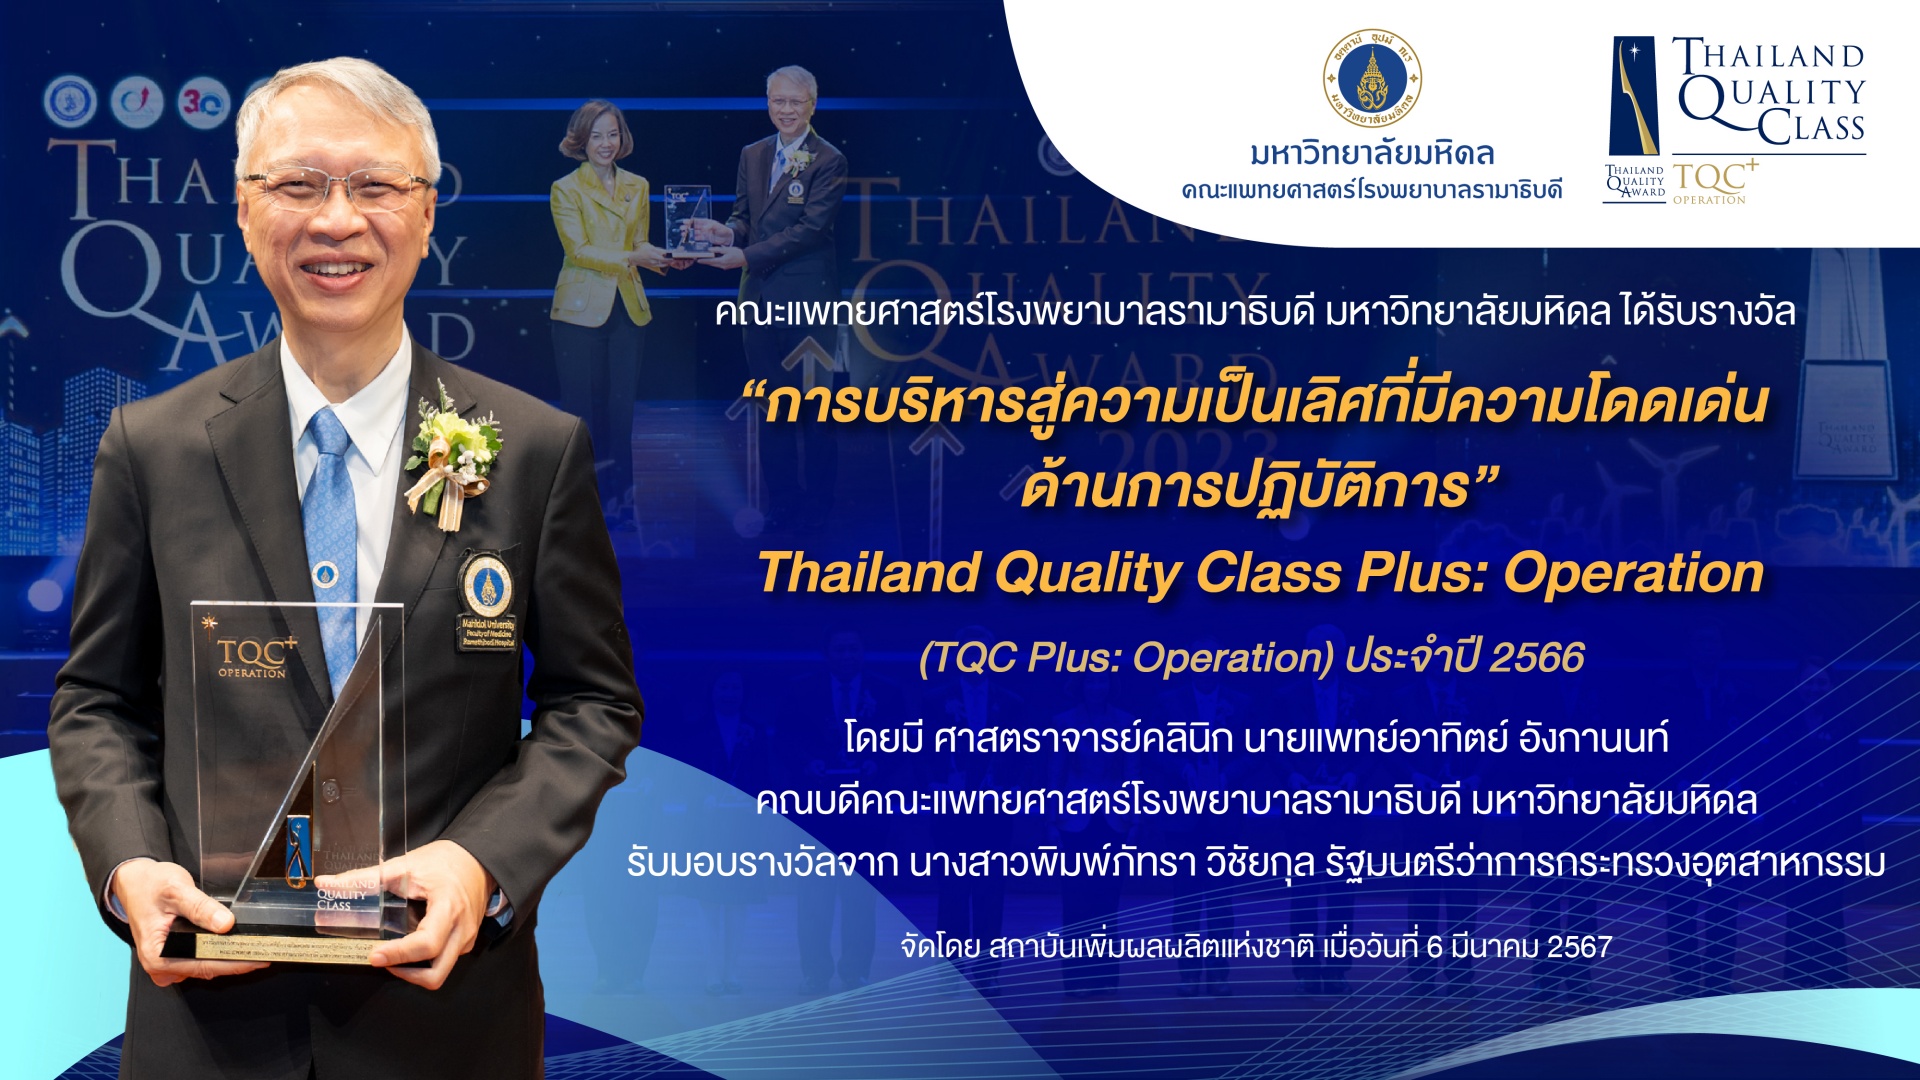 คณะแพทยศาสตร์โรงพยาบาลรามาธิบดี มหาวิทยาลัยมหิดล ได้รับรางวัล “การบริหารสู่ความเป็นเลิศที่มีความโดดเด่น ด้านการปฏิบัติการ” Thailand Quality Class Plus: Operation